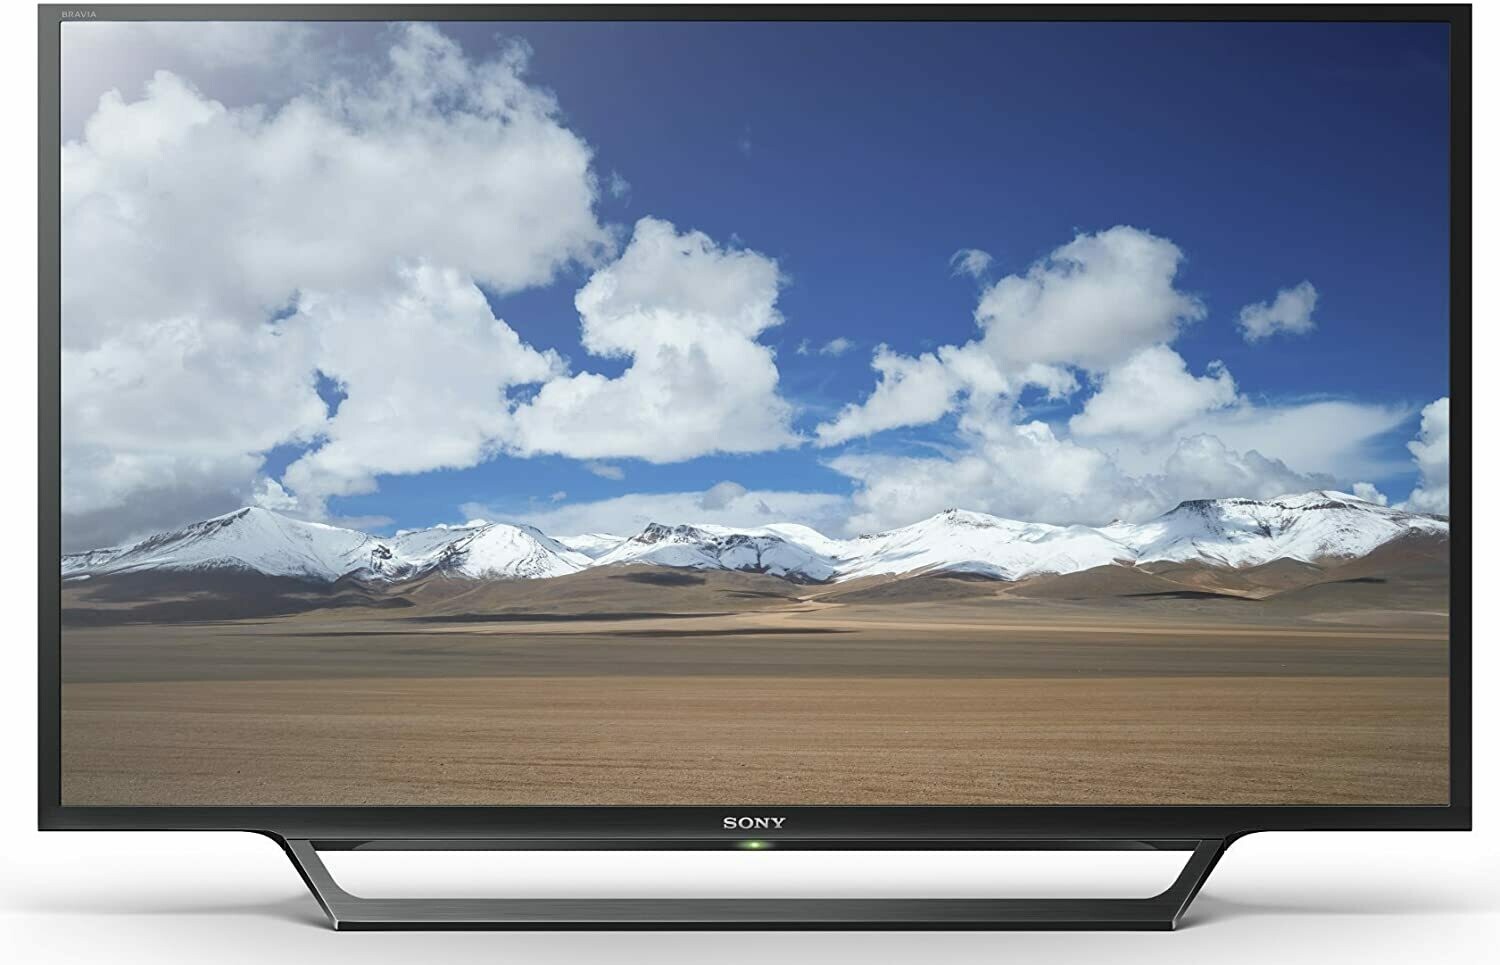 Sony KDL-32W600D 32-Inch Class HD Smart TV